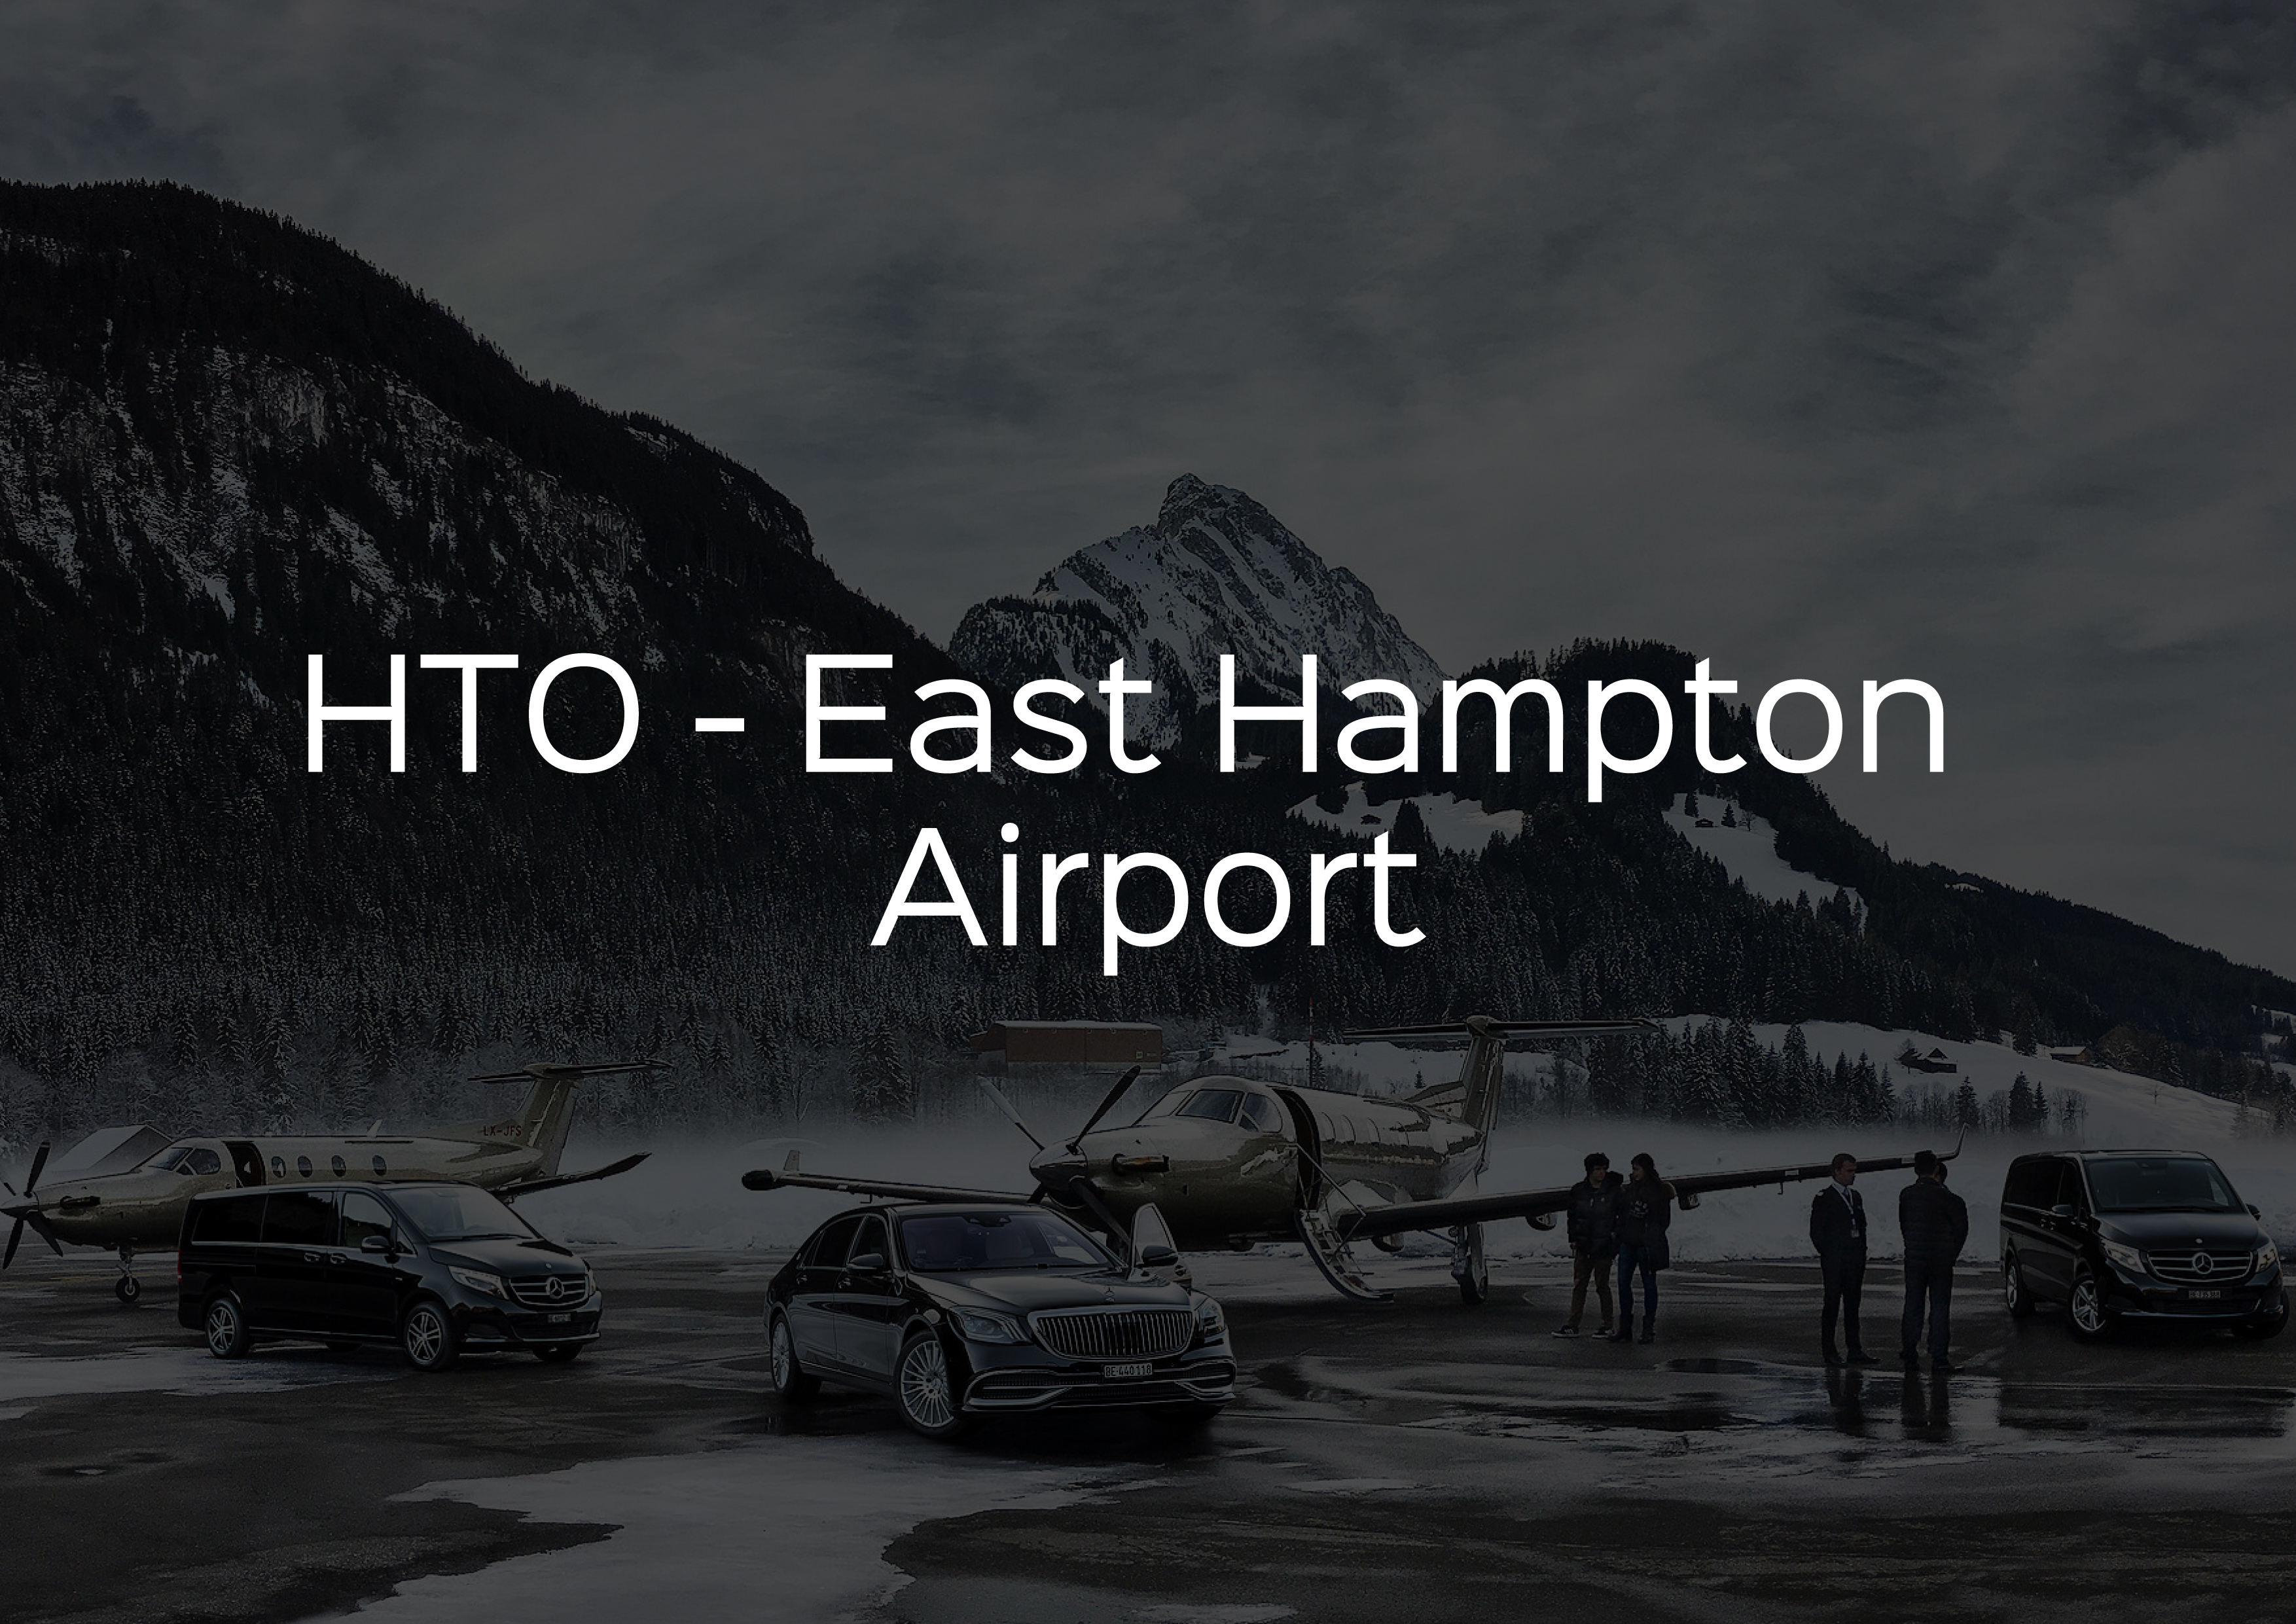 East Hampton airport